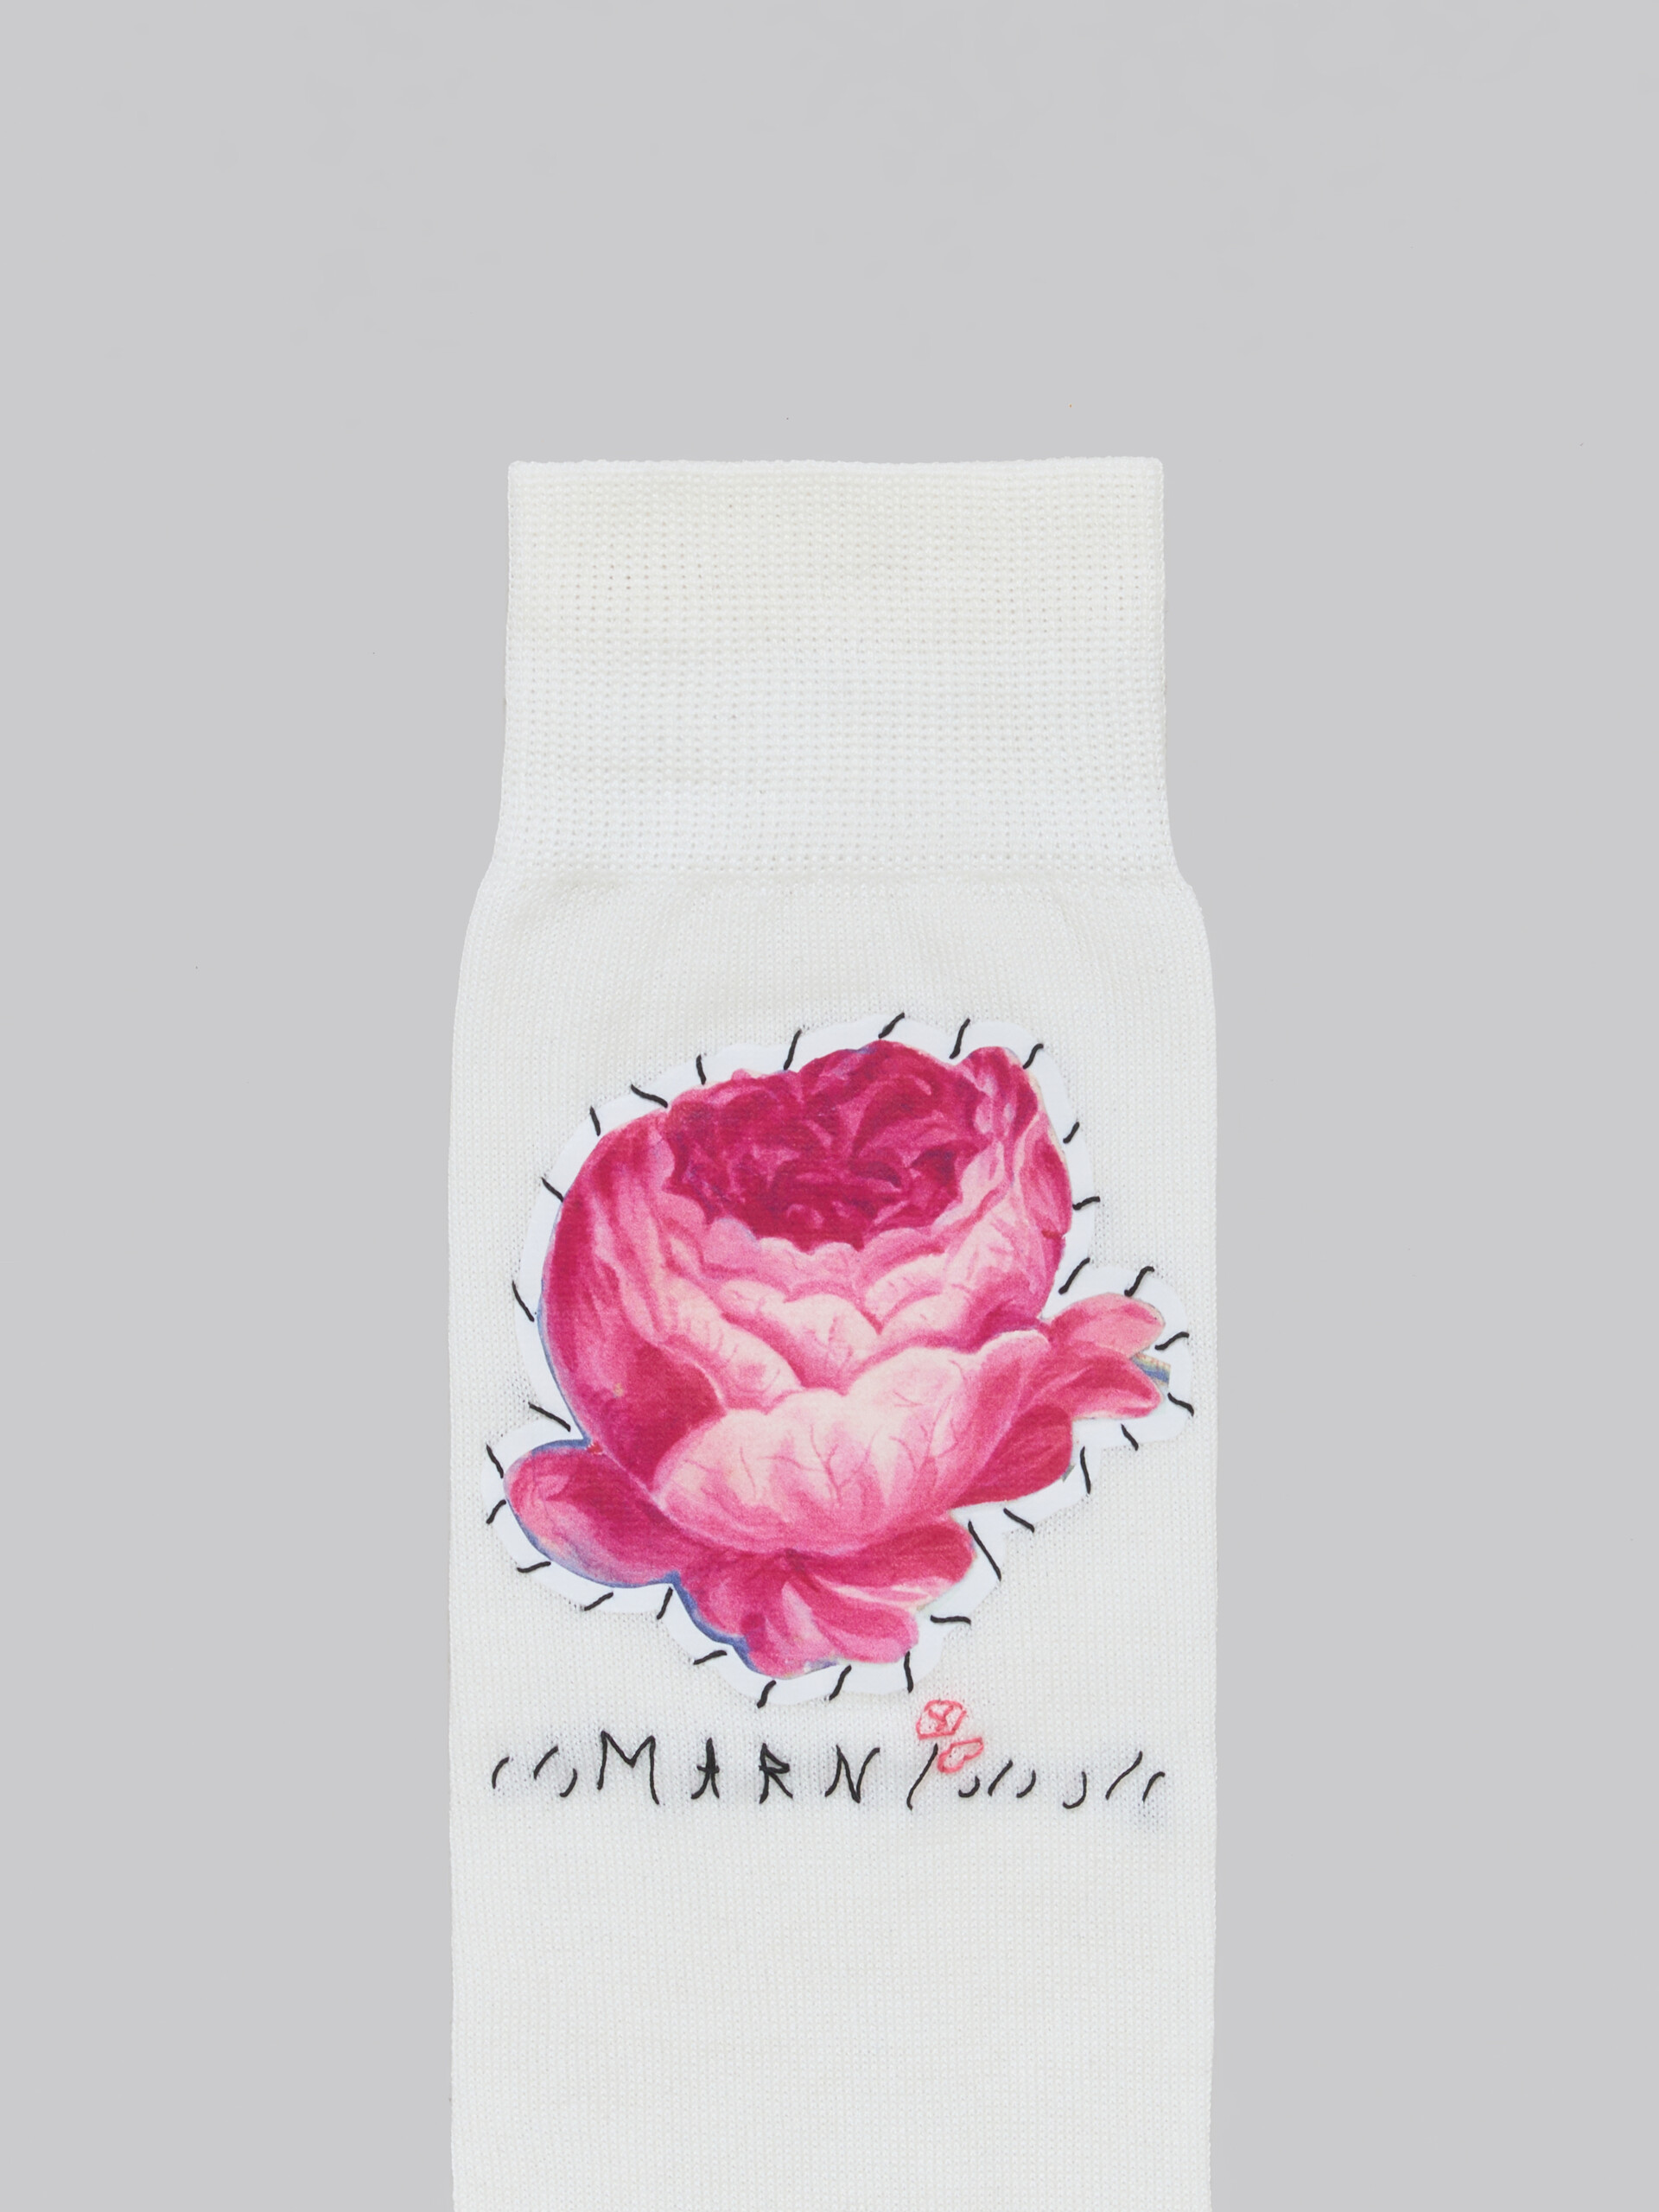 Calzini in cotone rosa con applicazioni a fiori - Calze - Image 3